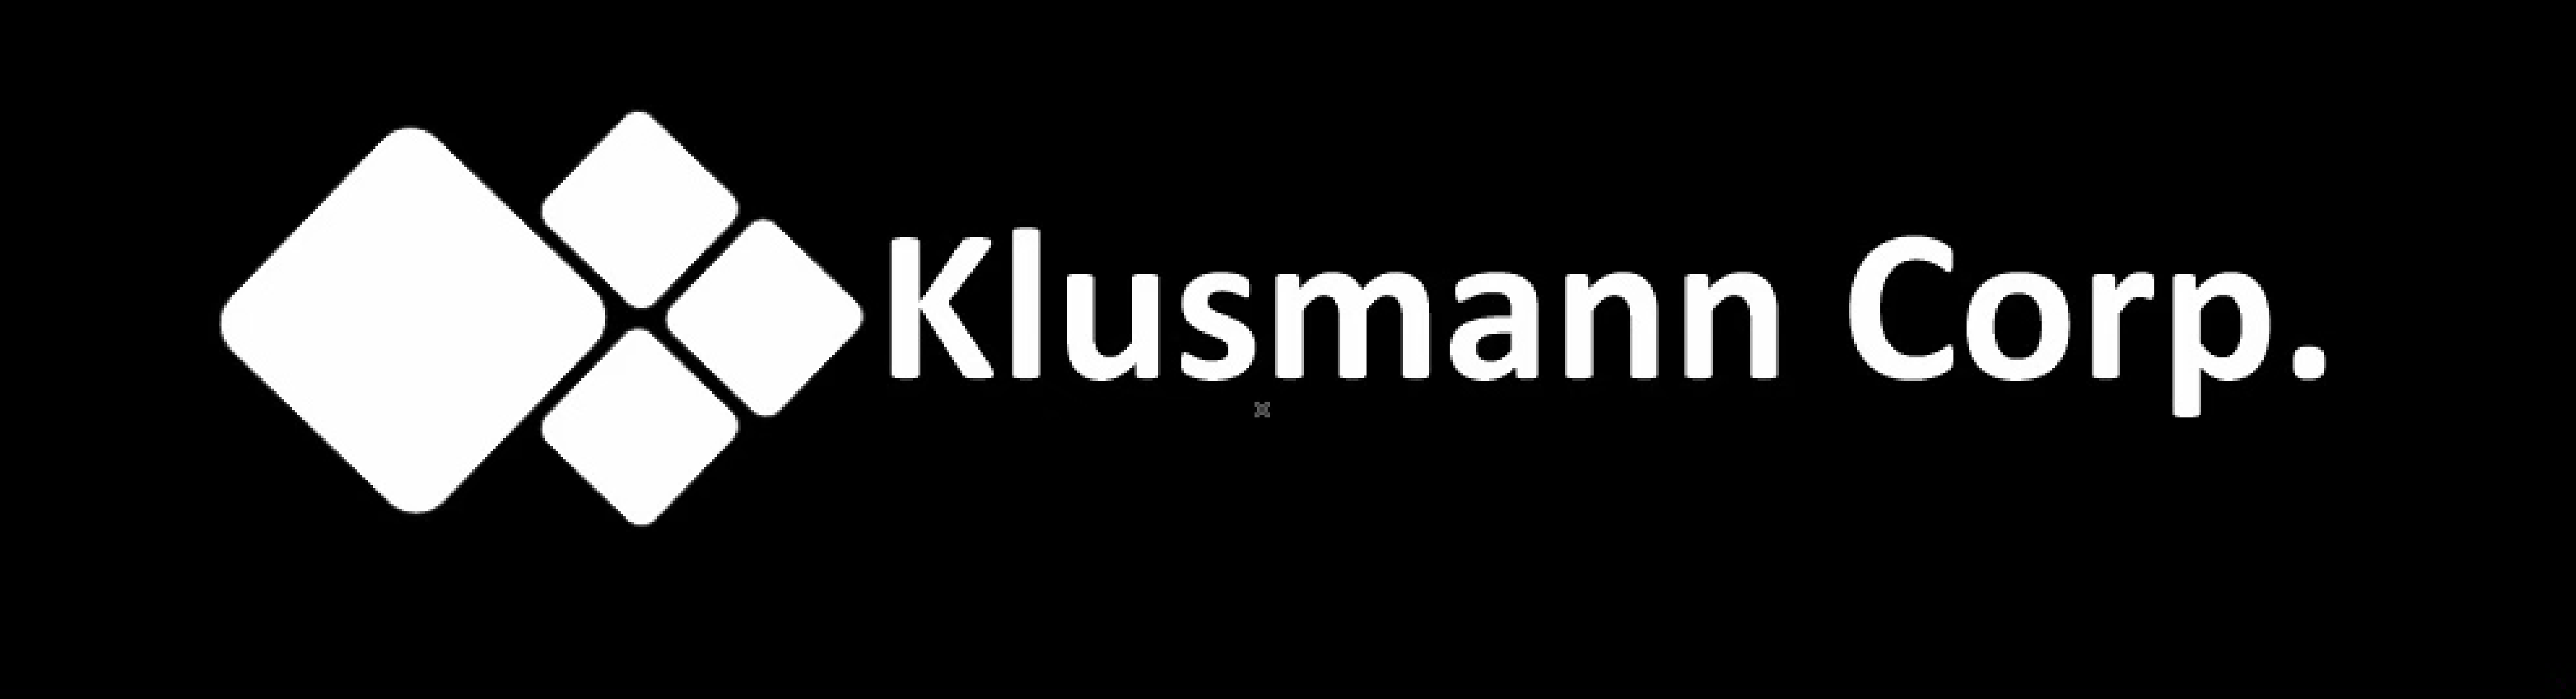 Klusmann Corp.